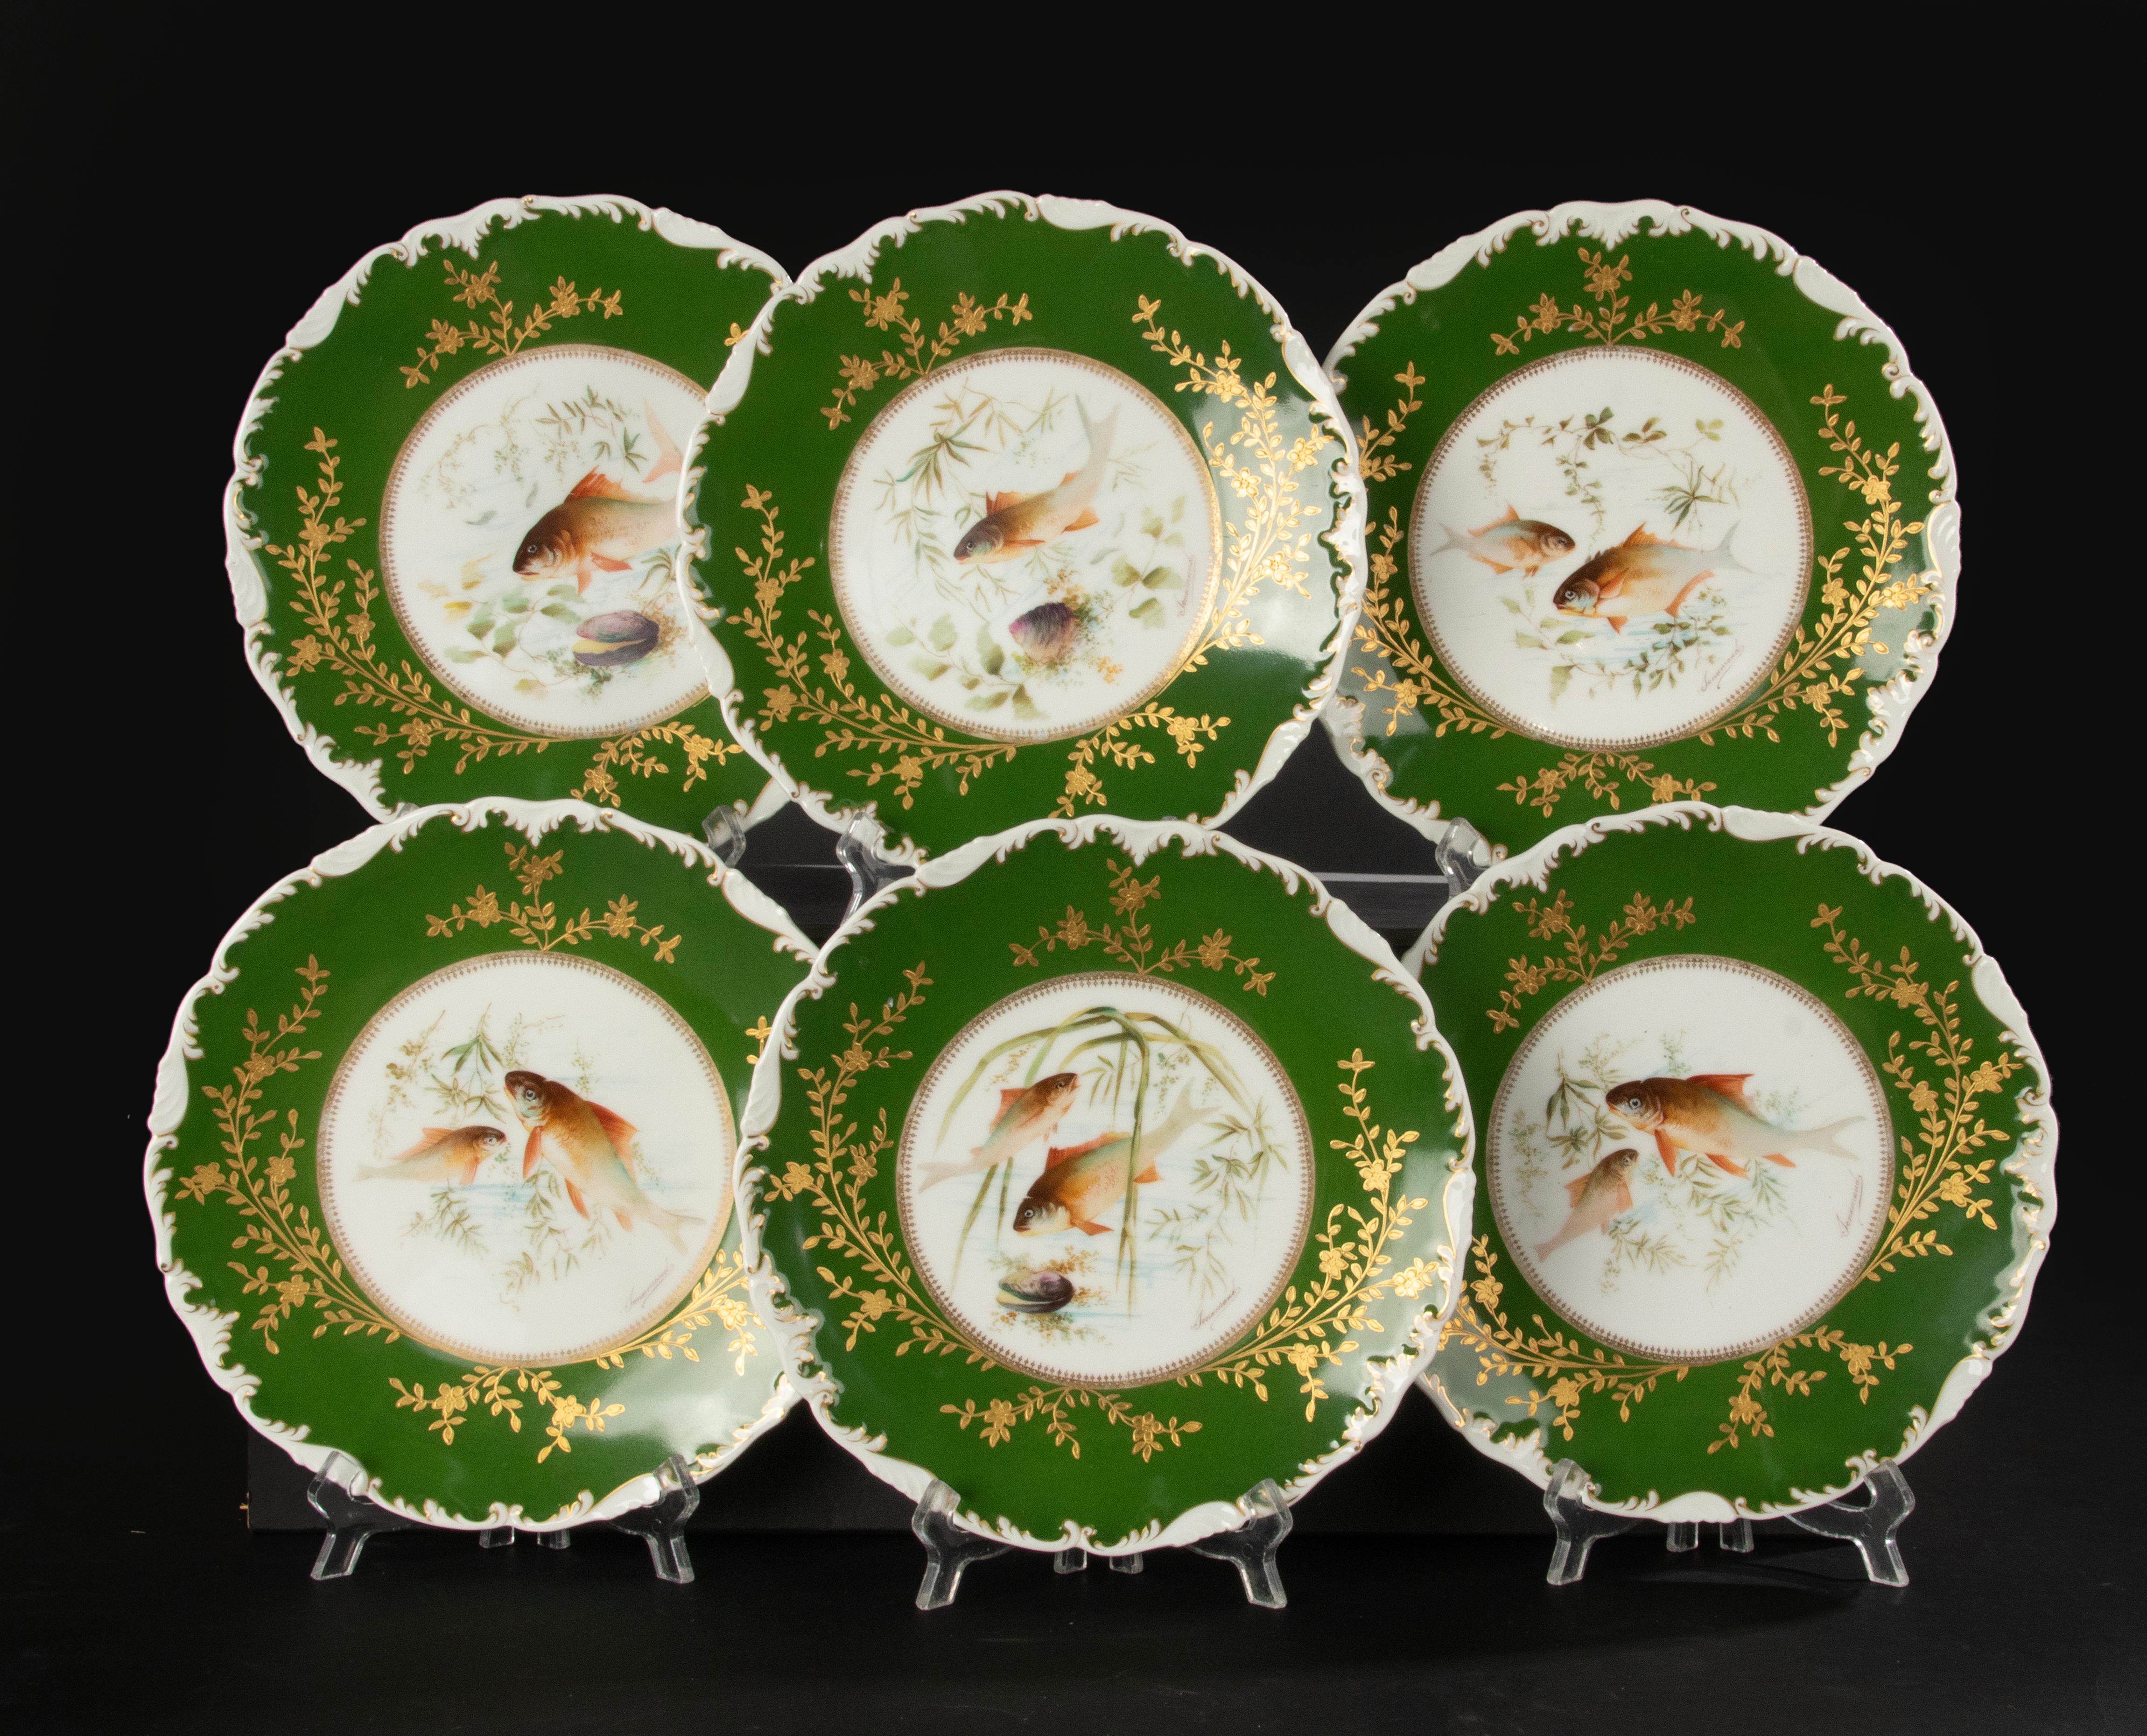 Ein tolles Set aus 6 Porzellan-Fischtellern der französischen Marke Limoges. Die Platten stammen aus der Zeit zwischen 1900 und 1910. Sie sind dekoriert und signiert von Tressemanes & Vogt. 
Die Platten sind in sehr gutem Zustand. Keine Chips und